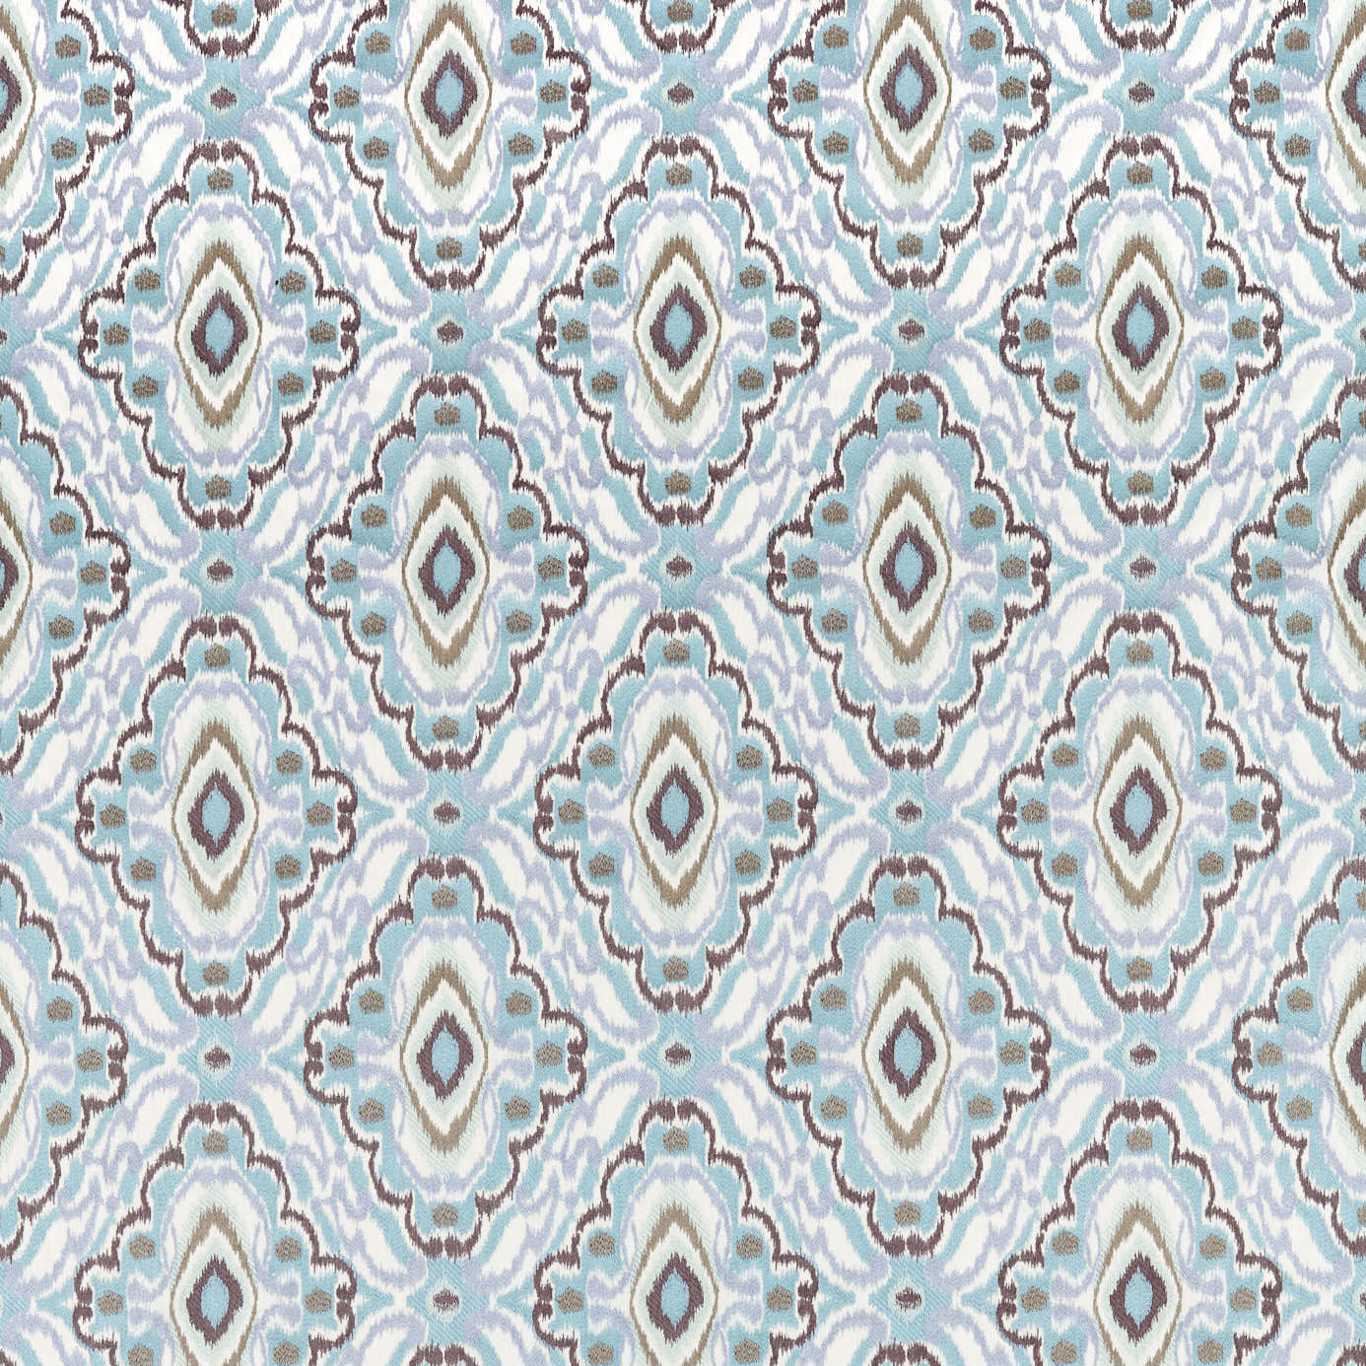 Ixora Fabric by Harlequin